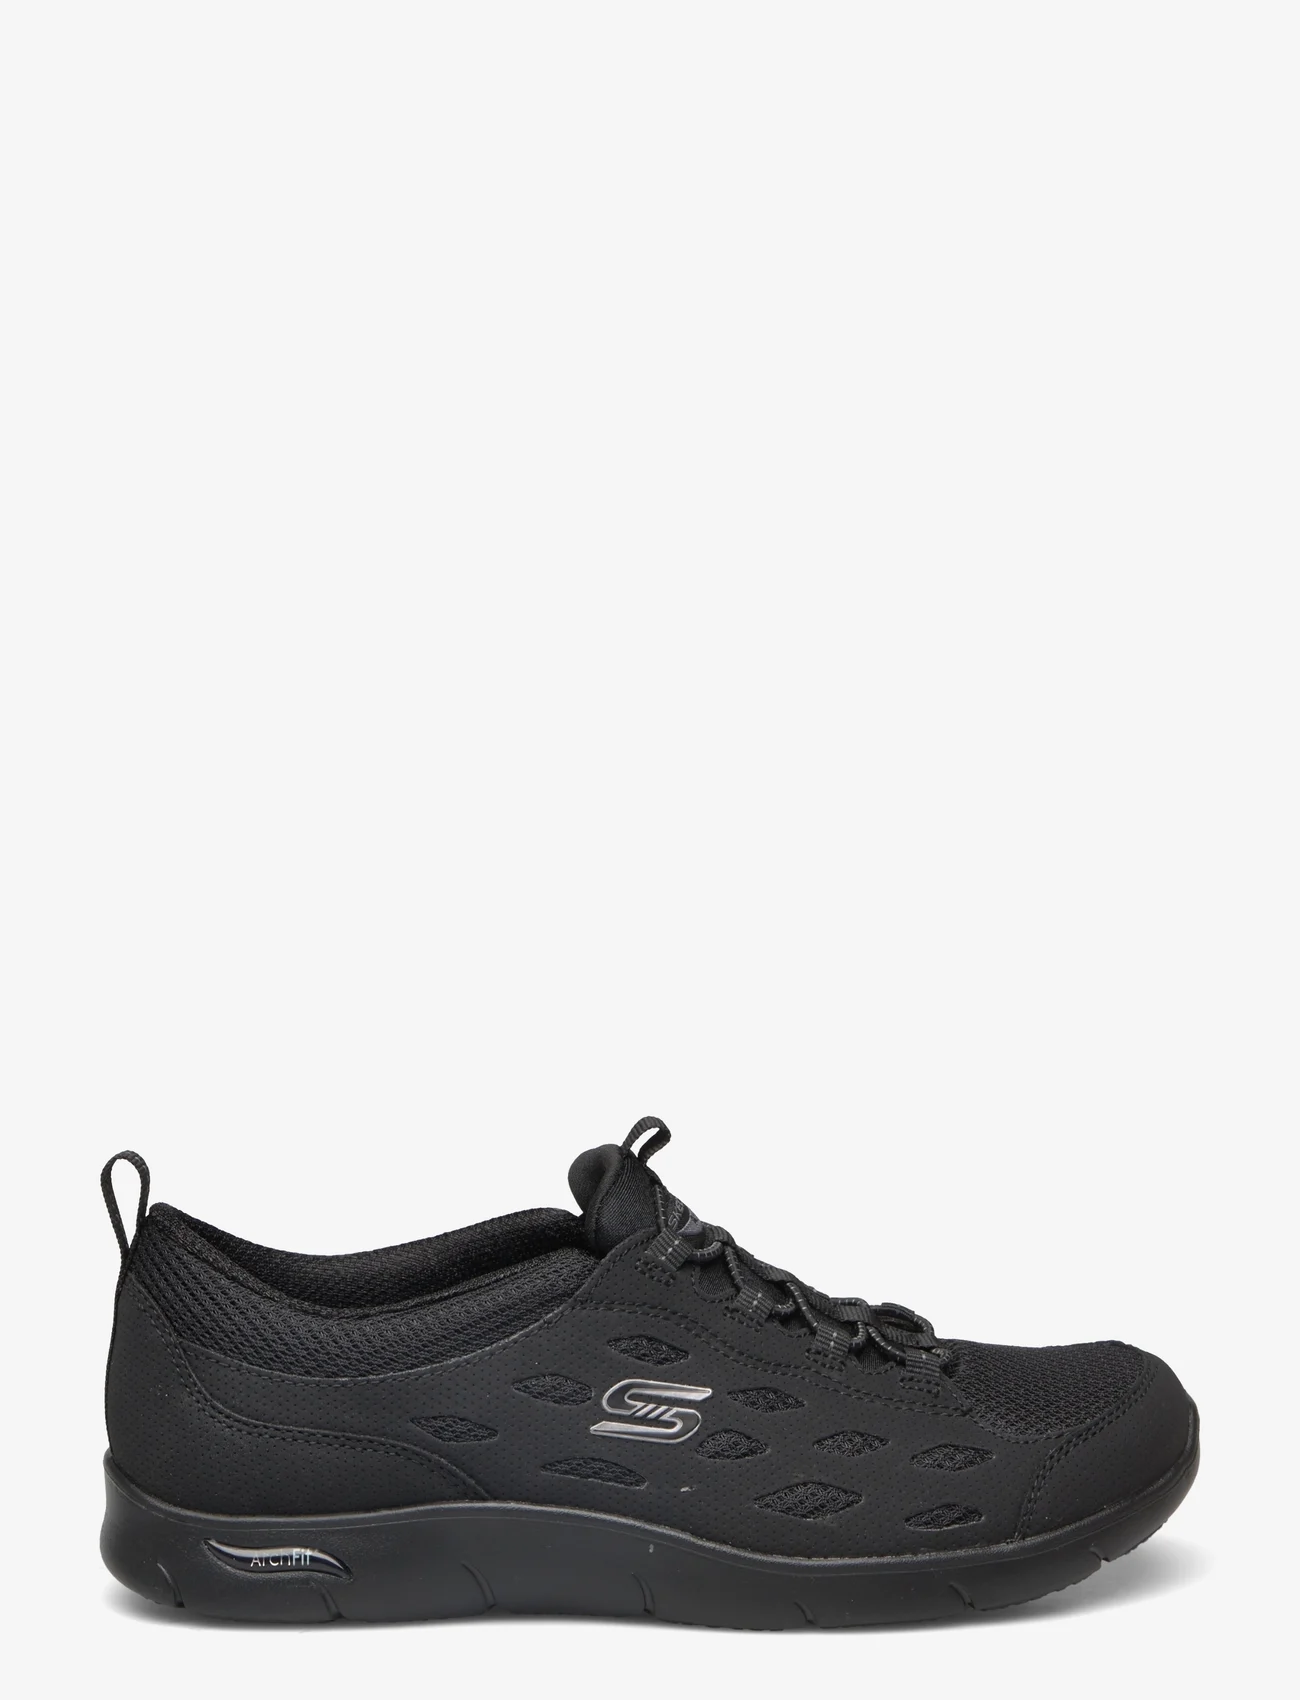 Skechers - Womens Arch Fit - Refine - låga sneakers - bbk black - 1